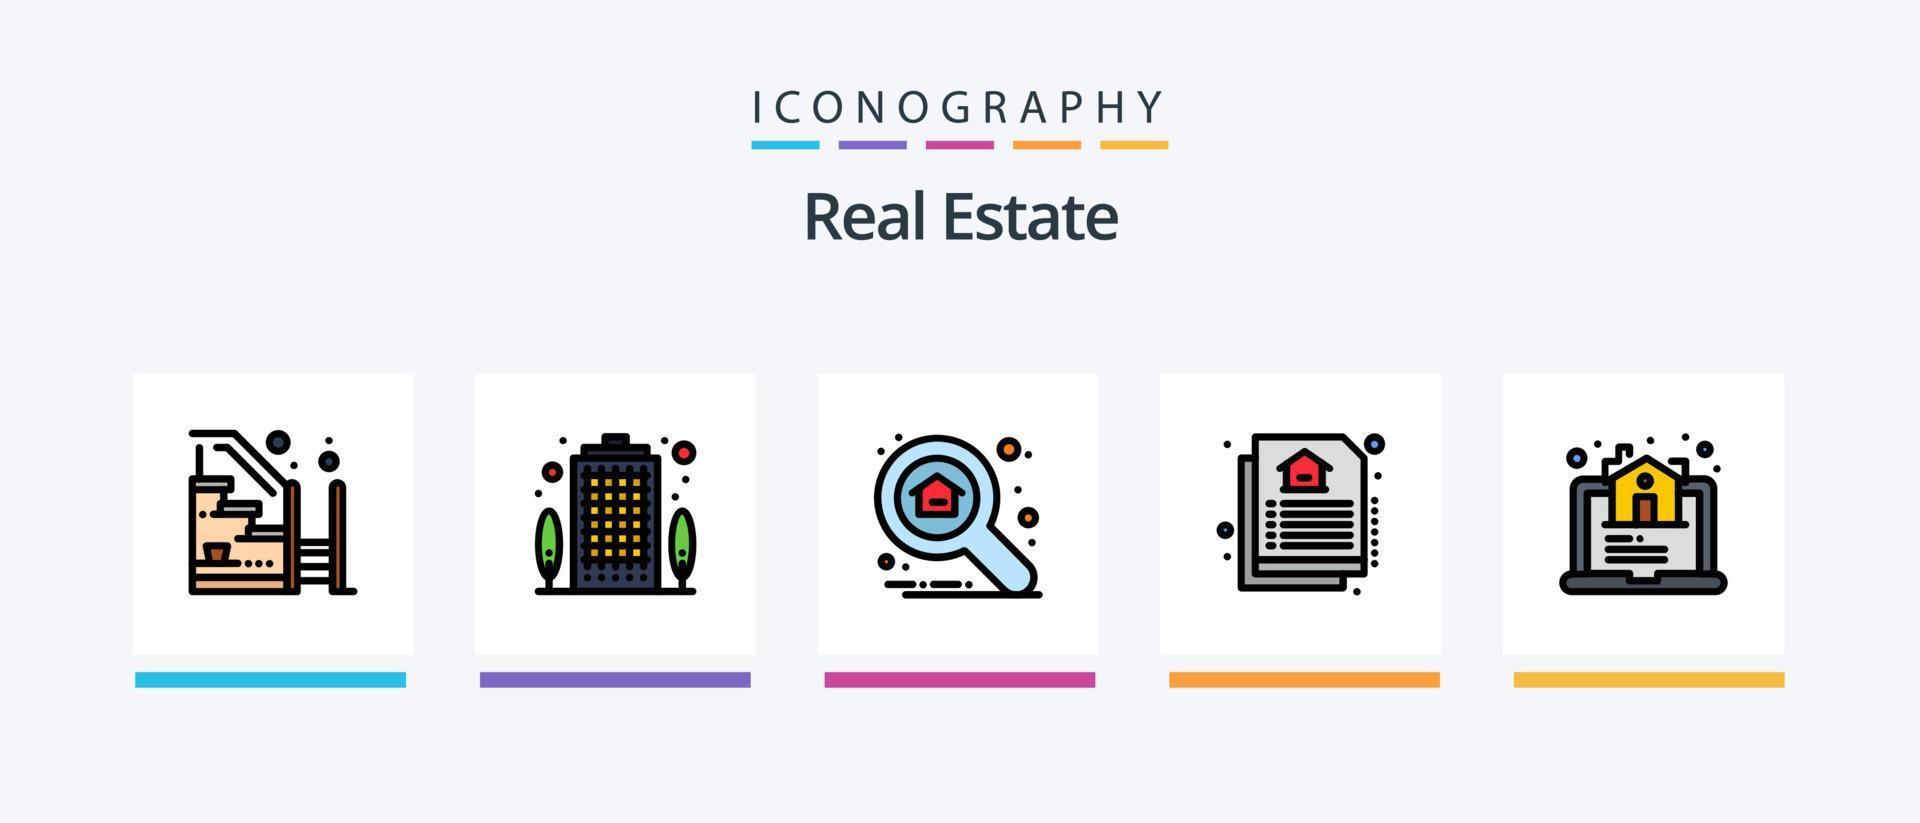 la línea de bienes raíces llenó el paquete de 5 íconos que incluye el mapa. bienes raíces. Progreso. propiedad. llaves de casa. diseño de iconos creativos vector